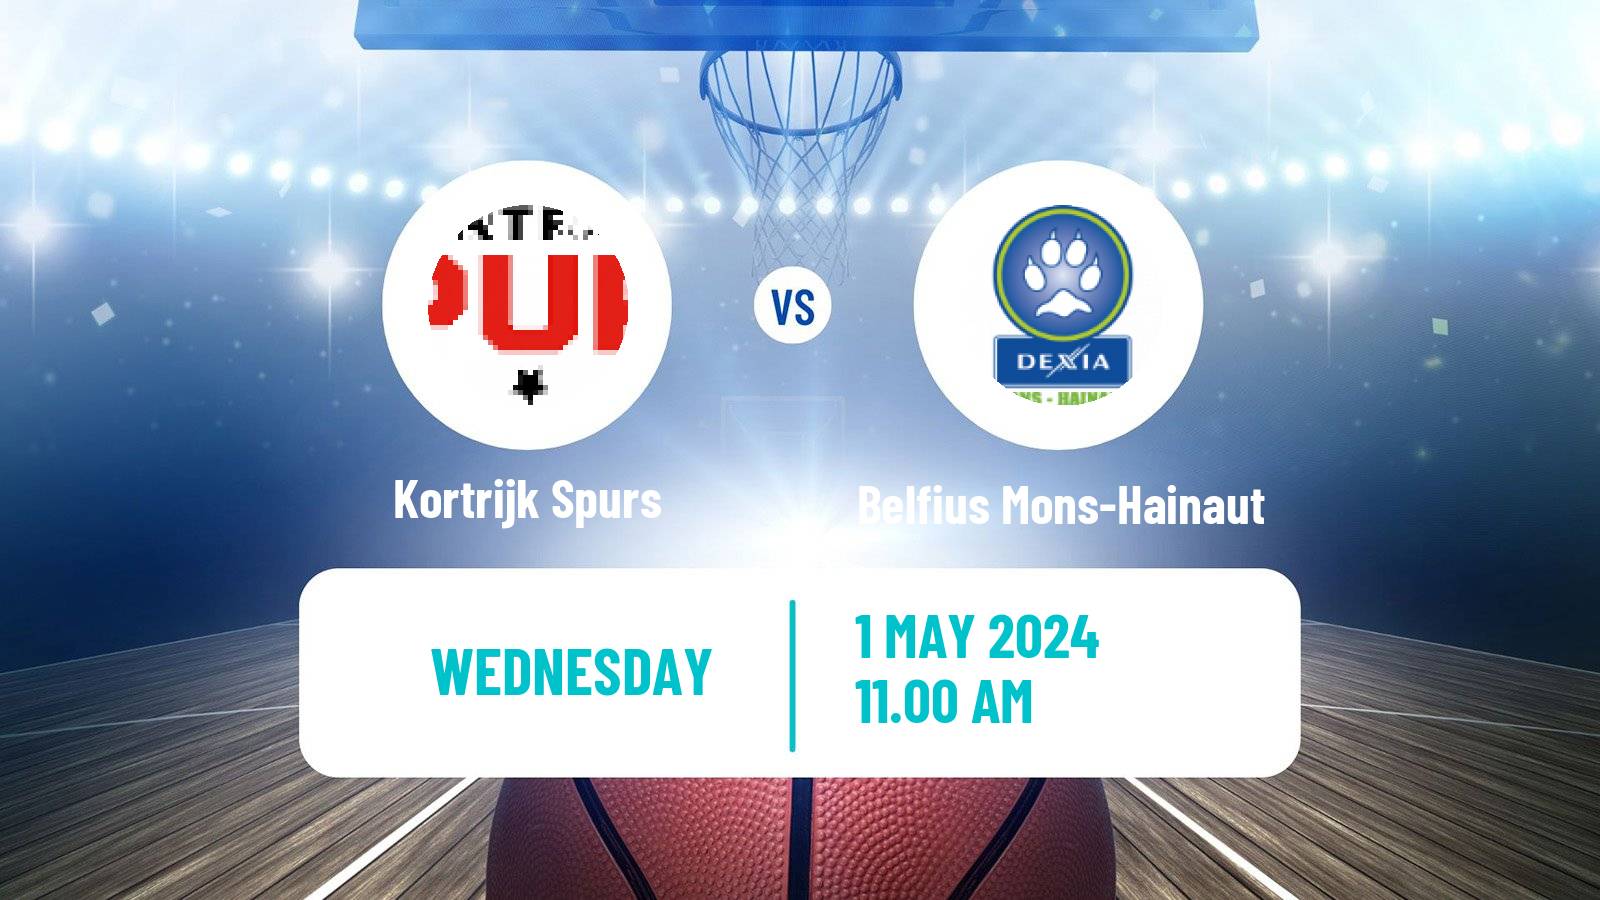 Basketball BNXT League Kortrijk Spurs - Belfius Mons-Hainaut